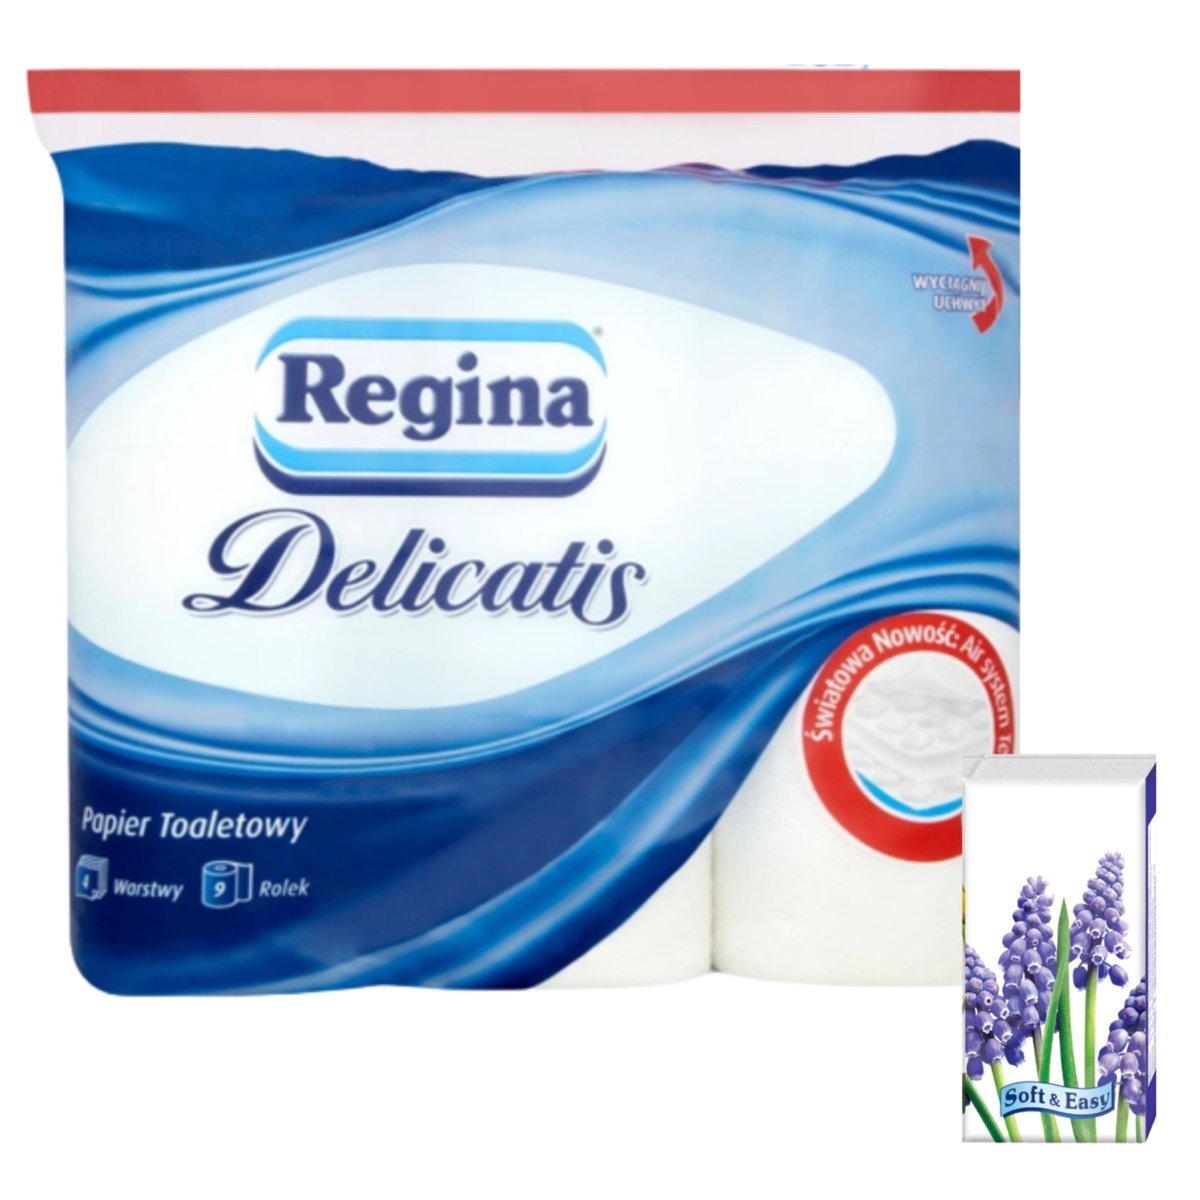 Regina Delicatis Papier Toaletowy 9 rolek